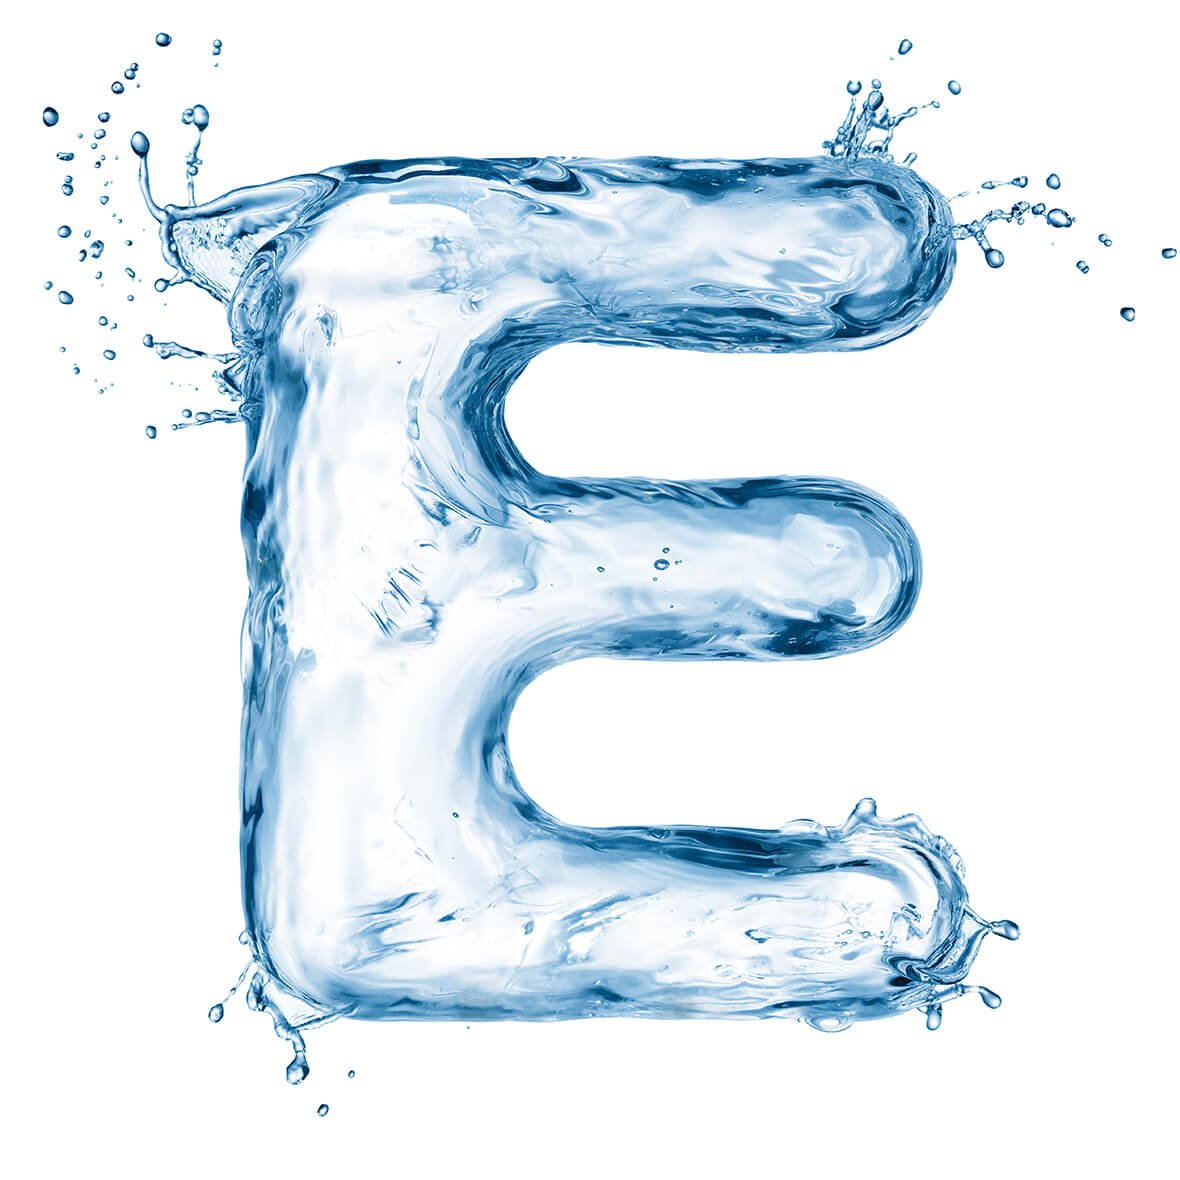 Буквы из воды. Буквы в виде воды. Русские буквы из воды. Буква е без фона. Буквы капли воды